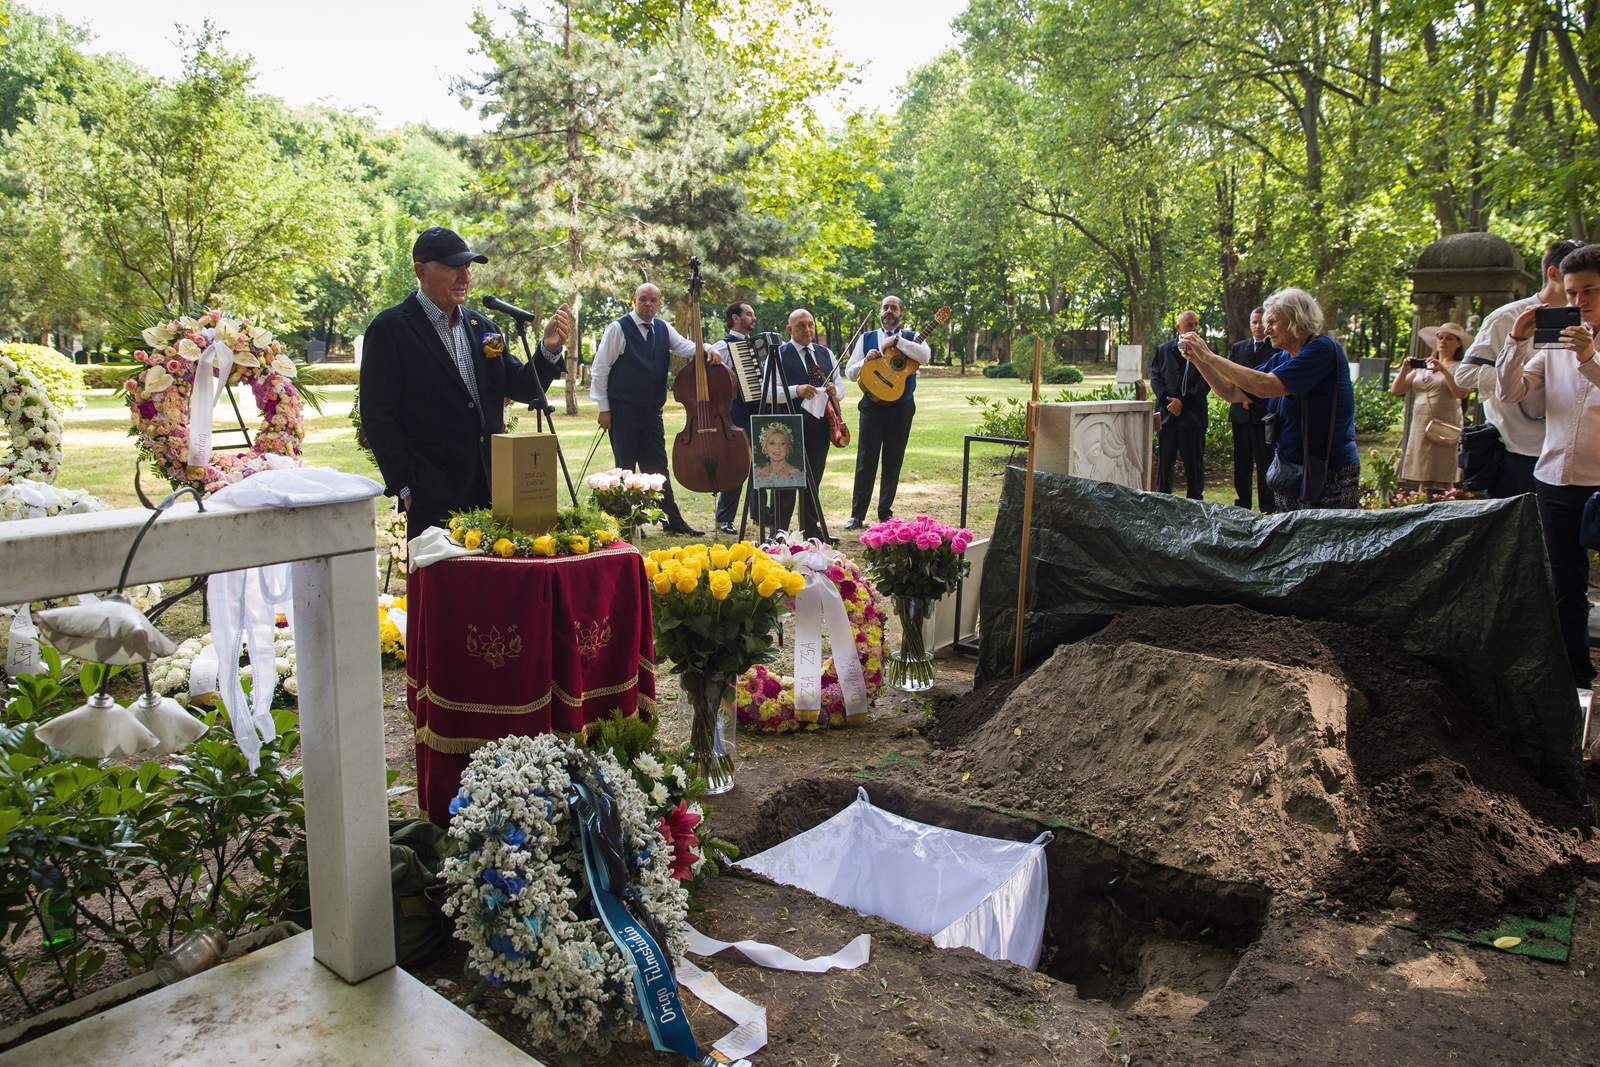 Cenușa Zsazsei Gábor a fost depusă marți în cimitirul de pe strada Fiumei din Budapesta, la aproape cinci ani de la moartea ei.